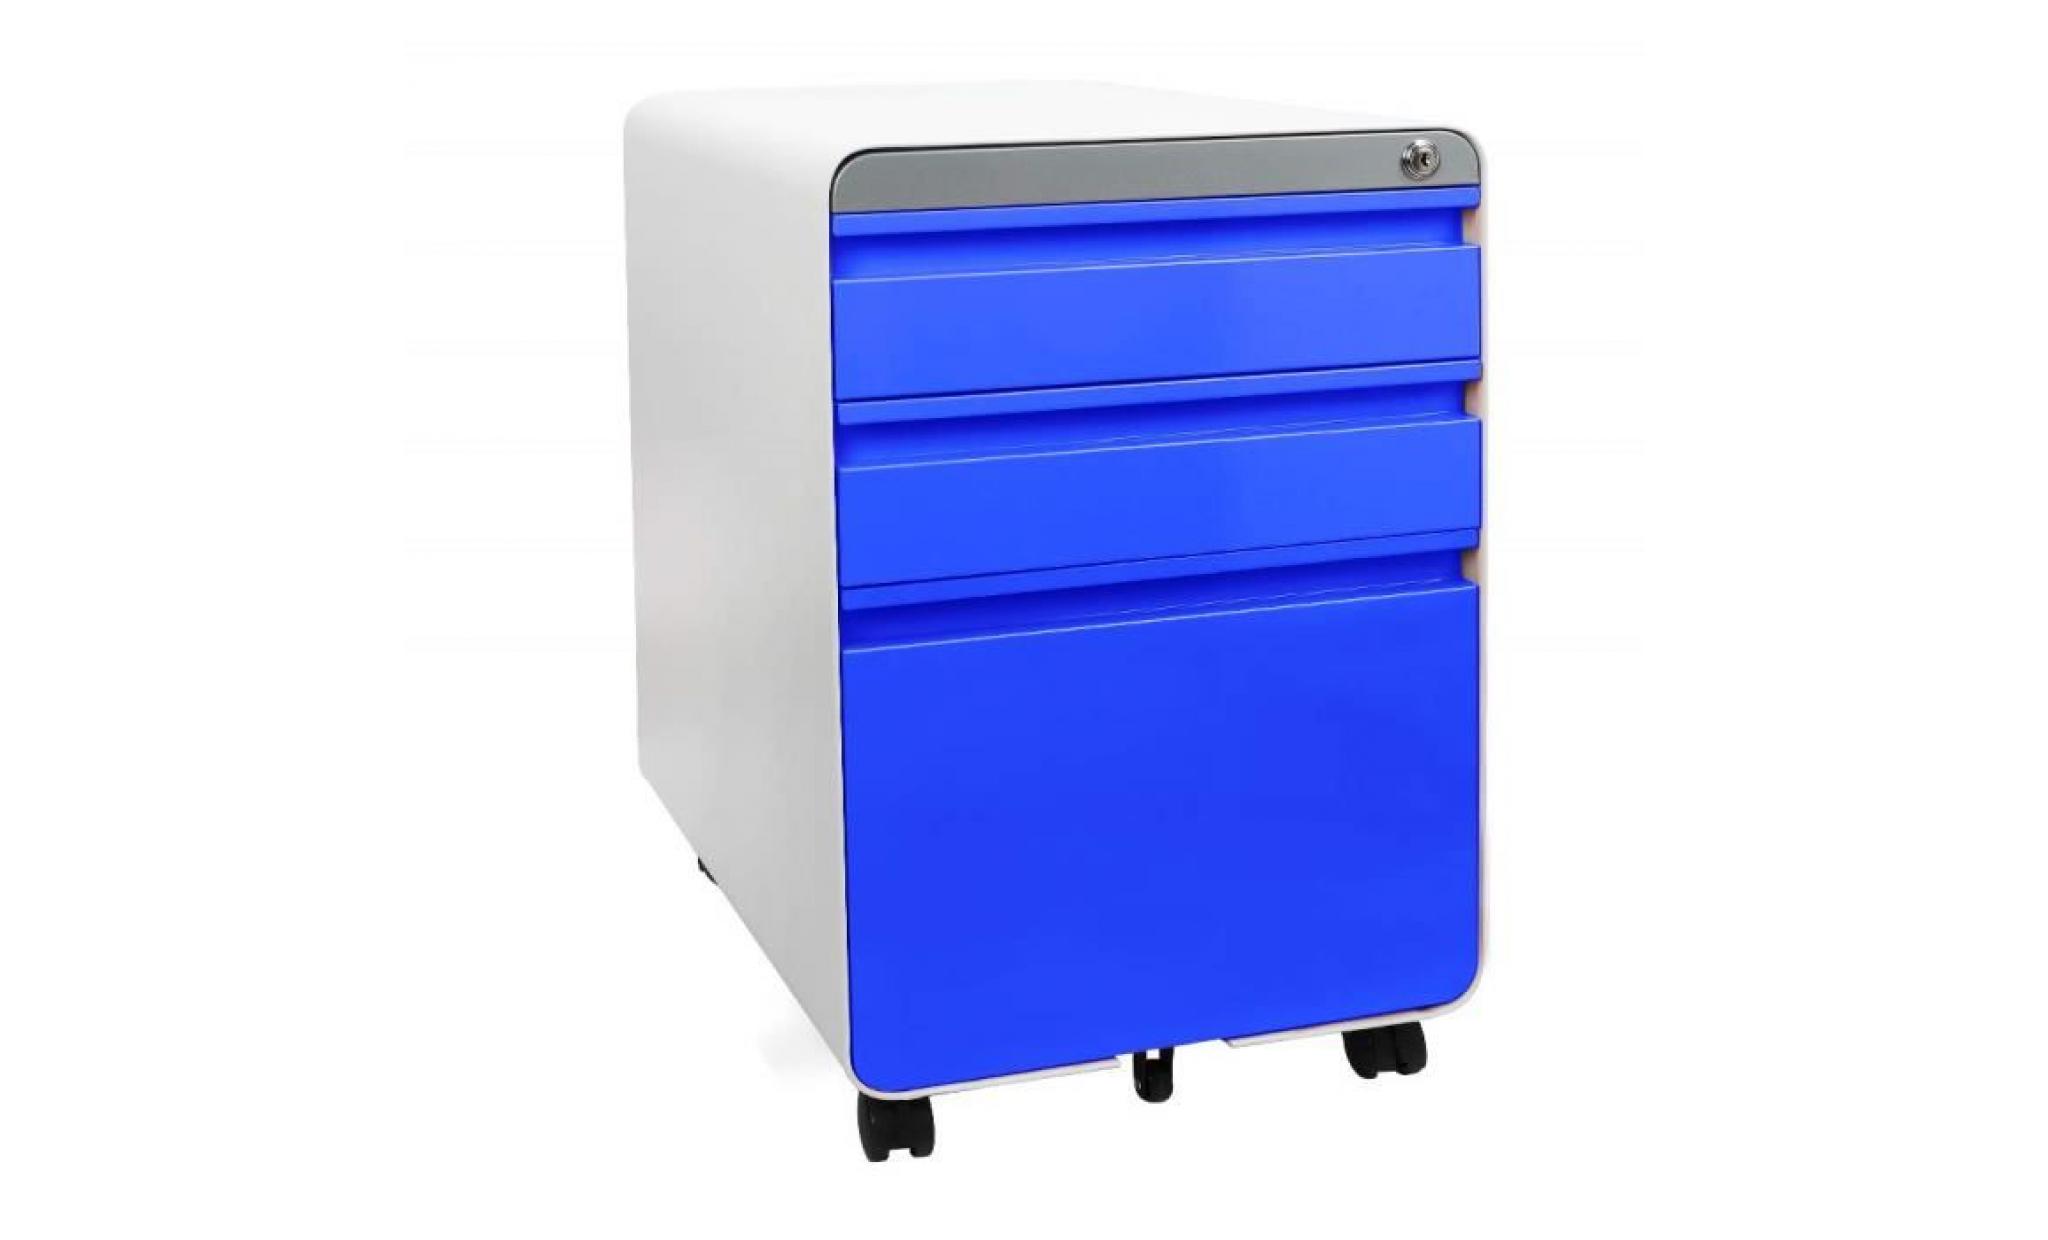 caisson blue de bureau à roulette 3 tiroirs rangement dossier meuble armoire verrouillable classeur en métal 5 roues 40x50x 62cm